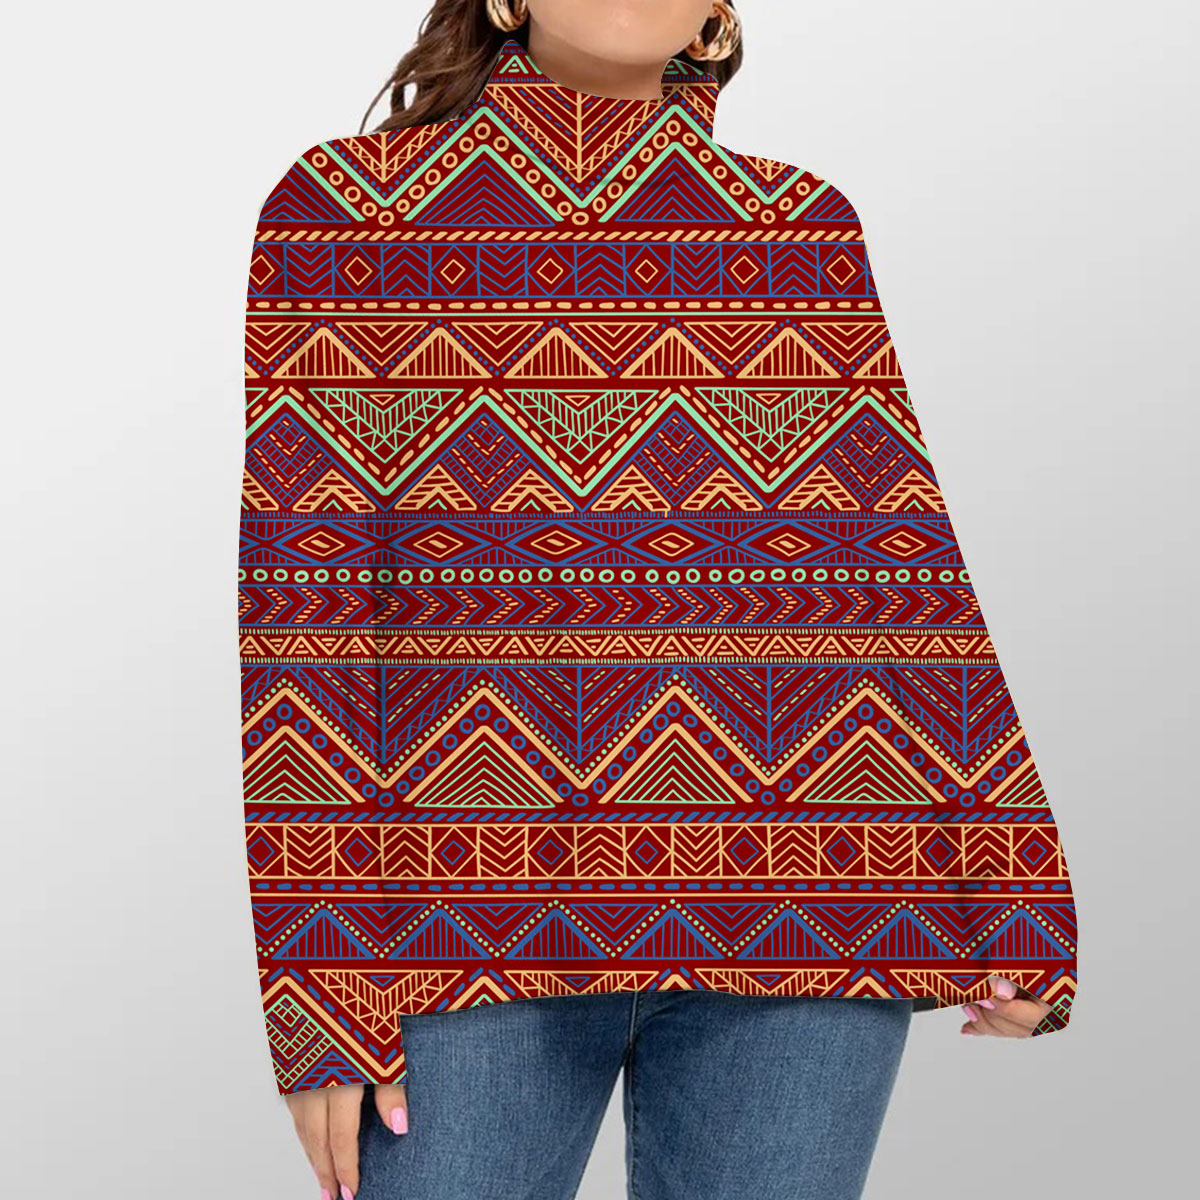 Bohemian Style Tribal Ethnic Turtleneck Sweater